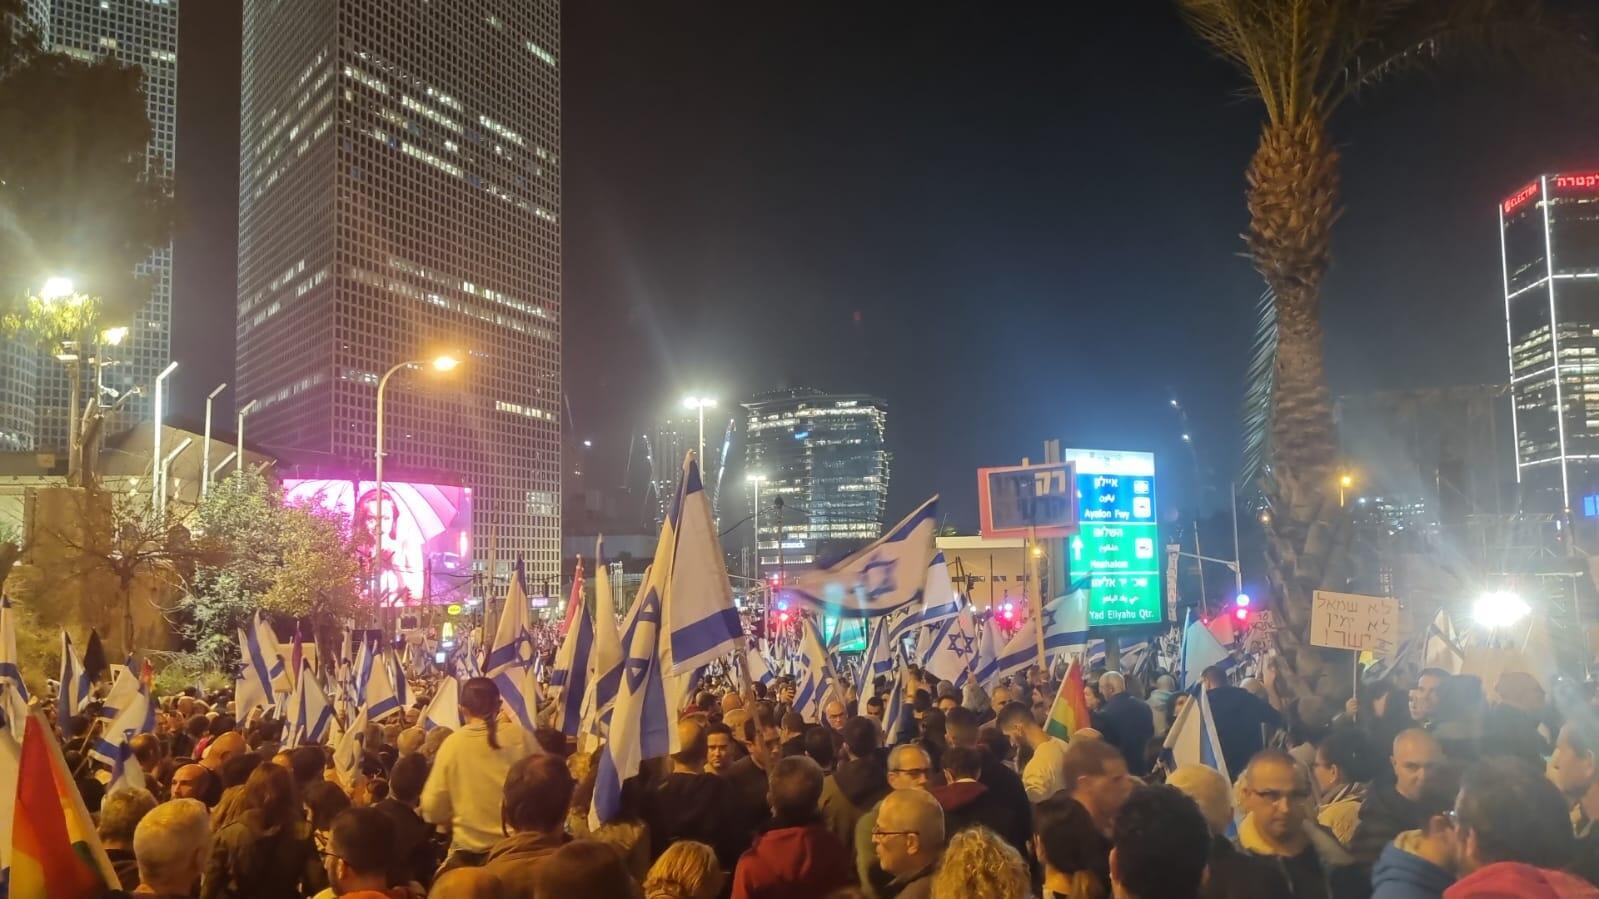 הפגנה מחאה מפגינים בתל אביב נגד ההפיכה המשפטית 21 בינאור